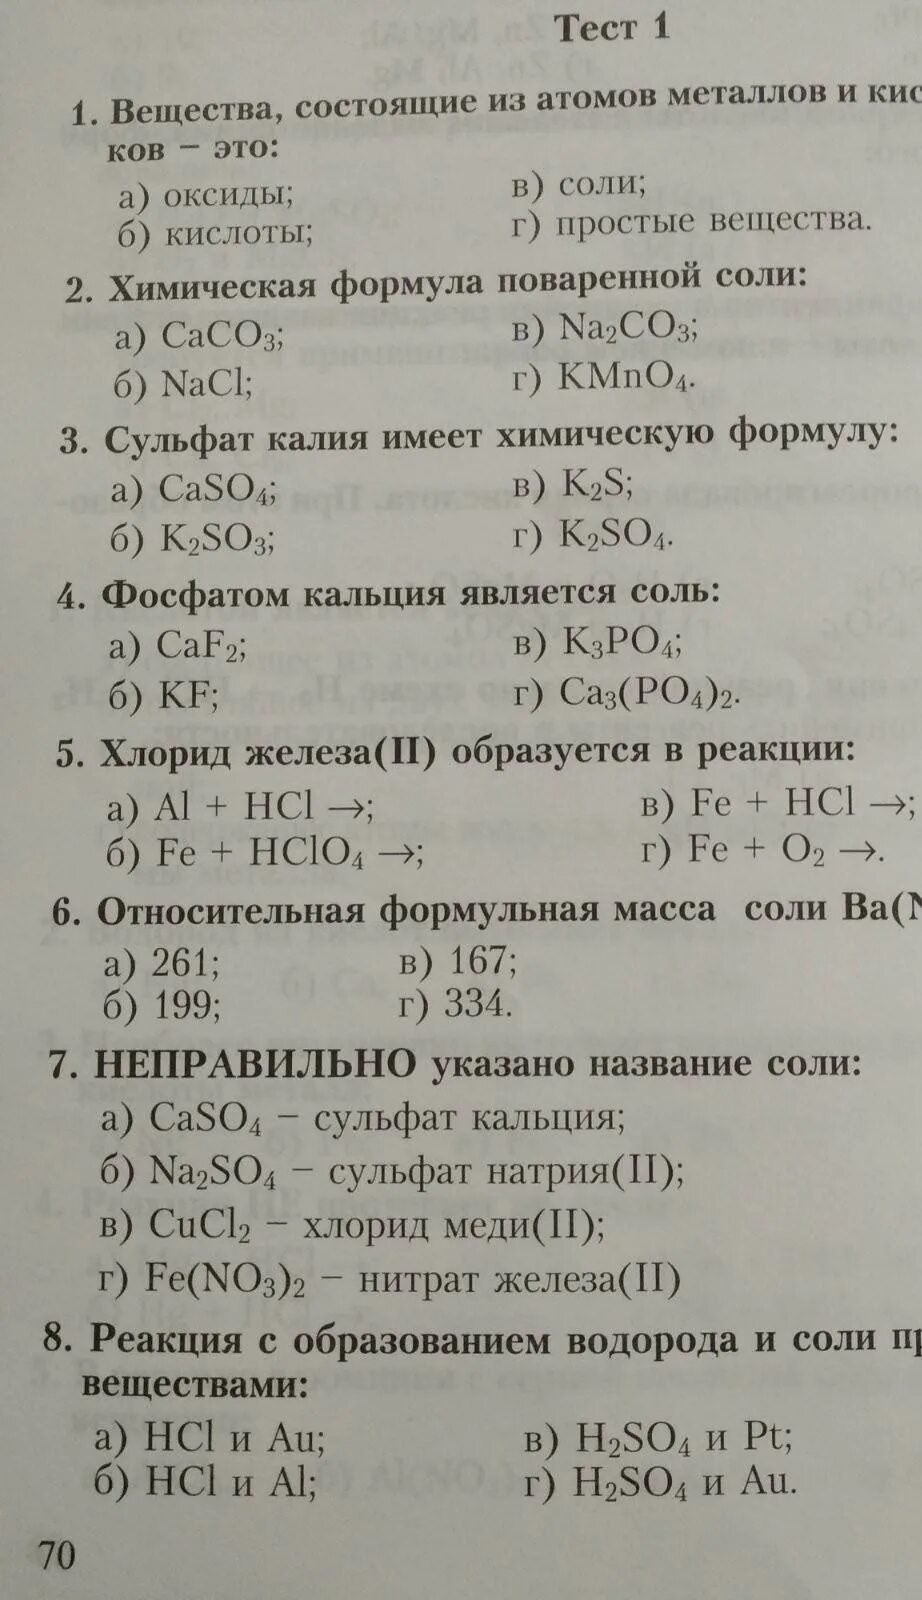 Сложный тест по химии